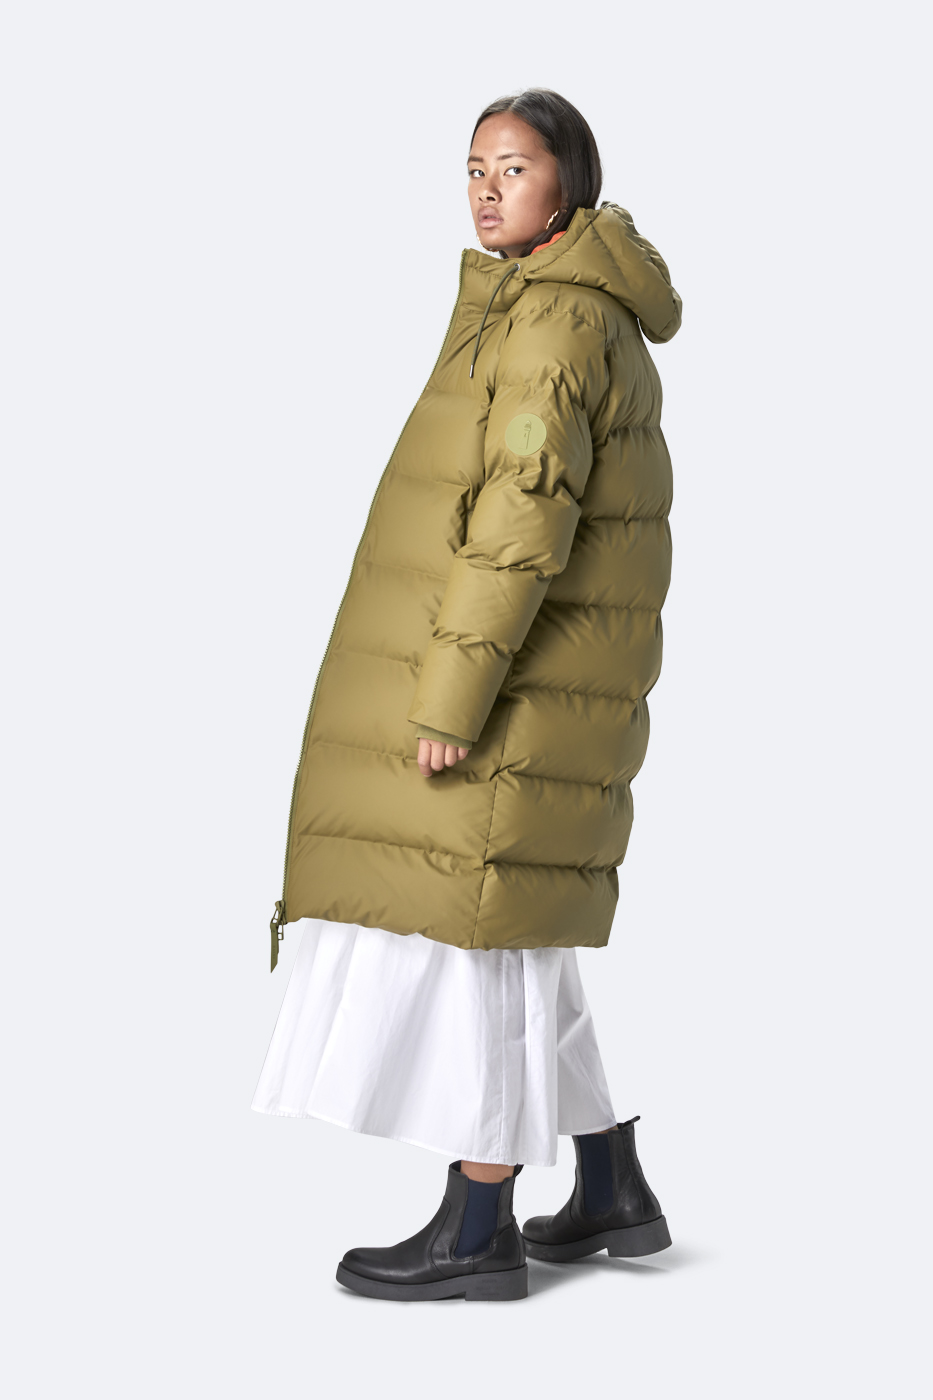 rod bønner Koge Rains lancerer kollektion med vandtæt vintertøj - Euroman